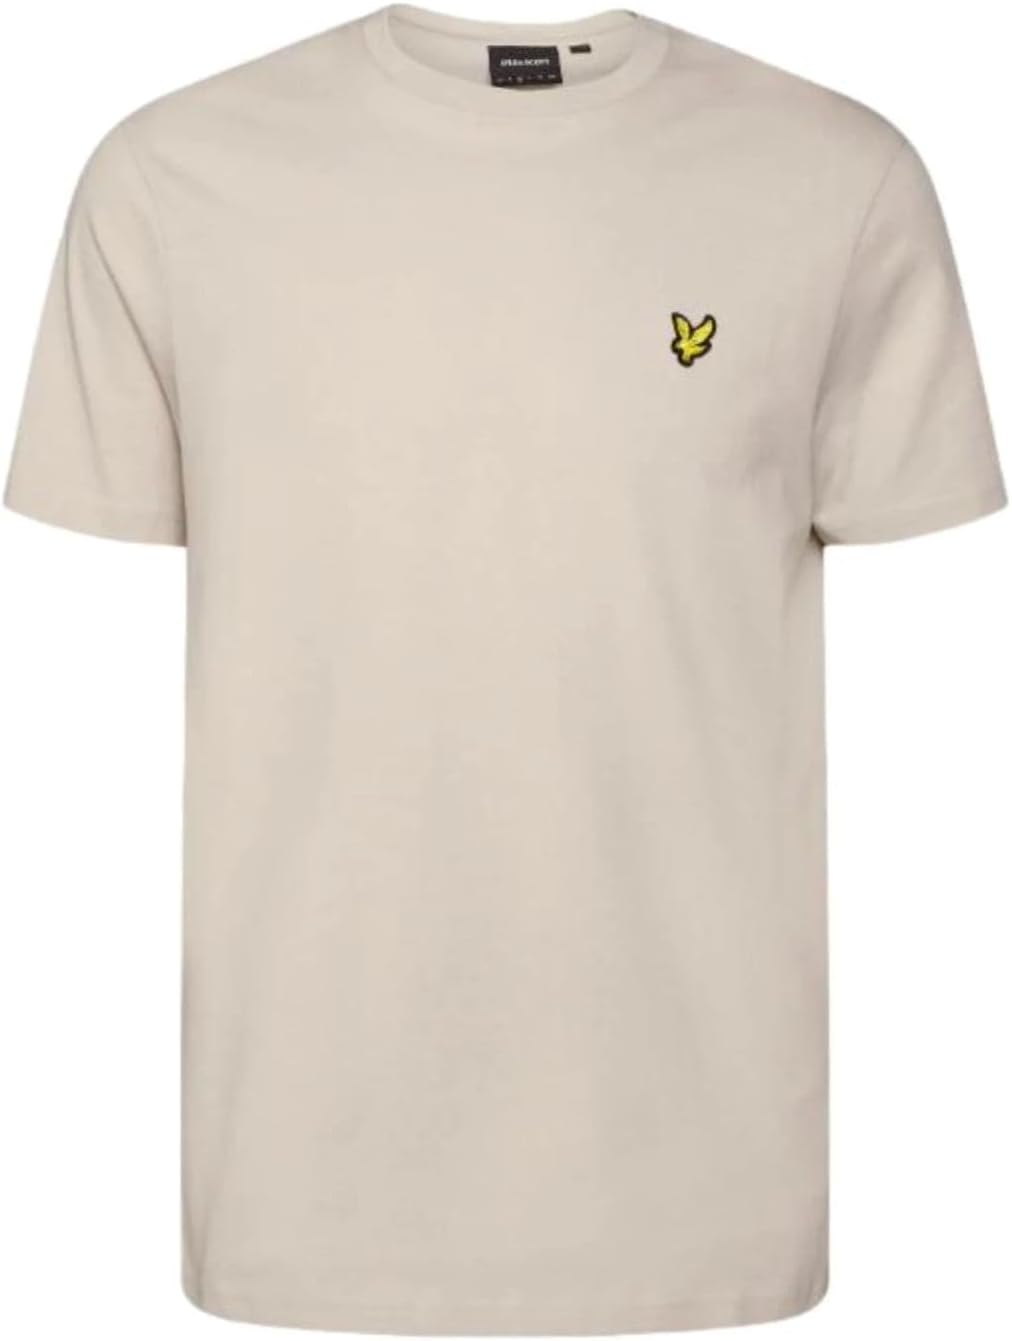 LYLE & SCOTT T-shirt Uomo - Beige modello TS400VOG